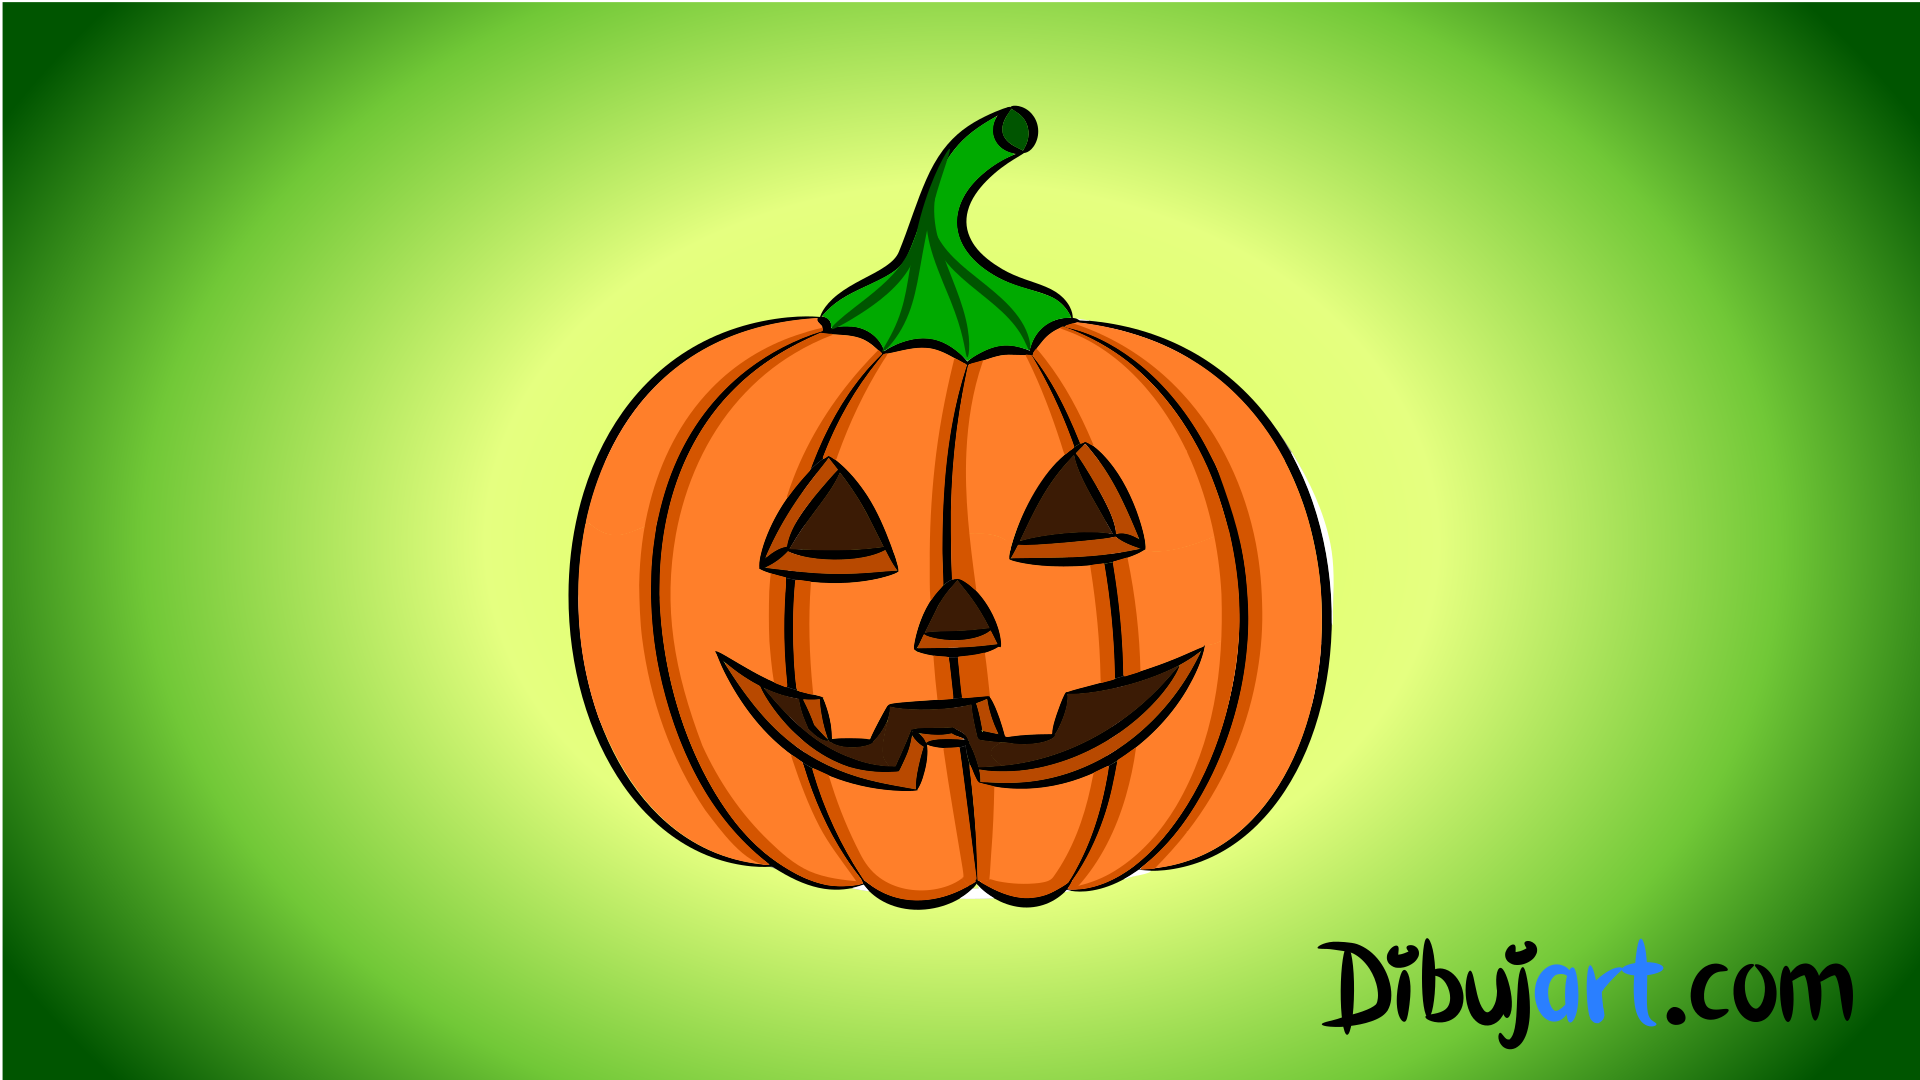 Imagen de una Calabaza de Halloween en clipart o cartoon.